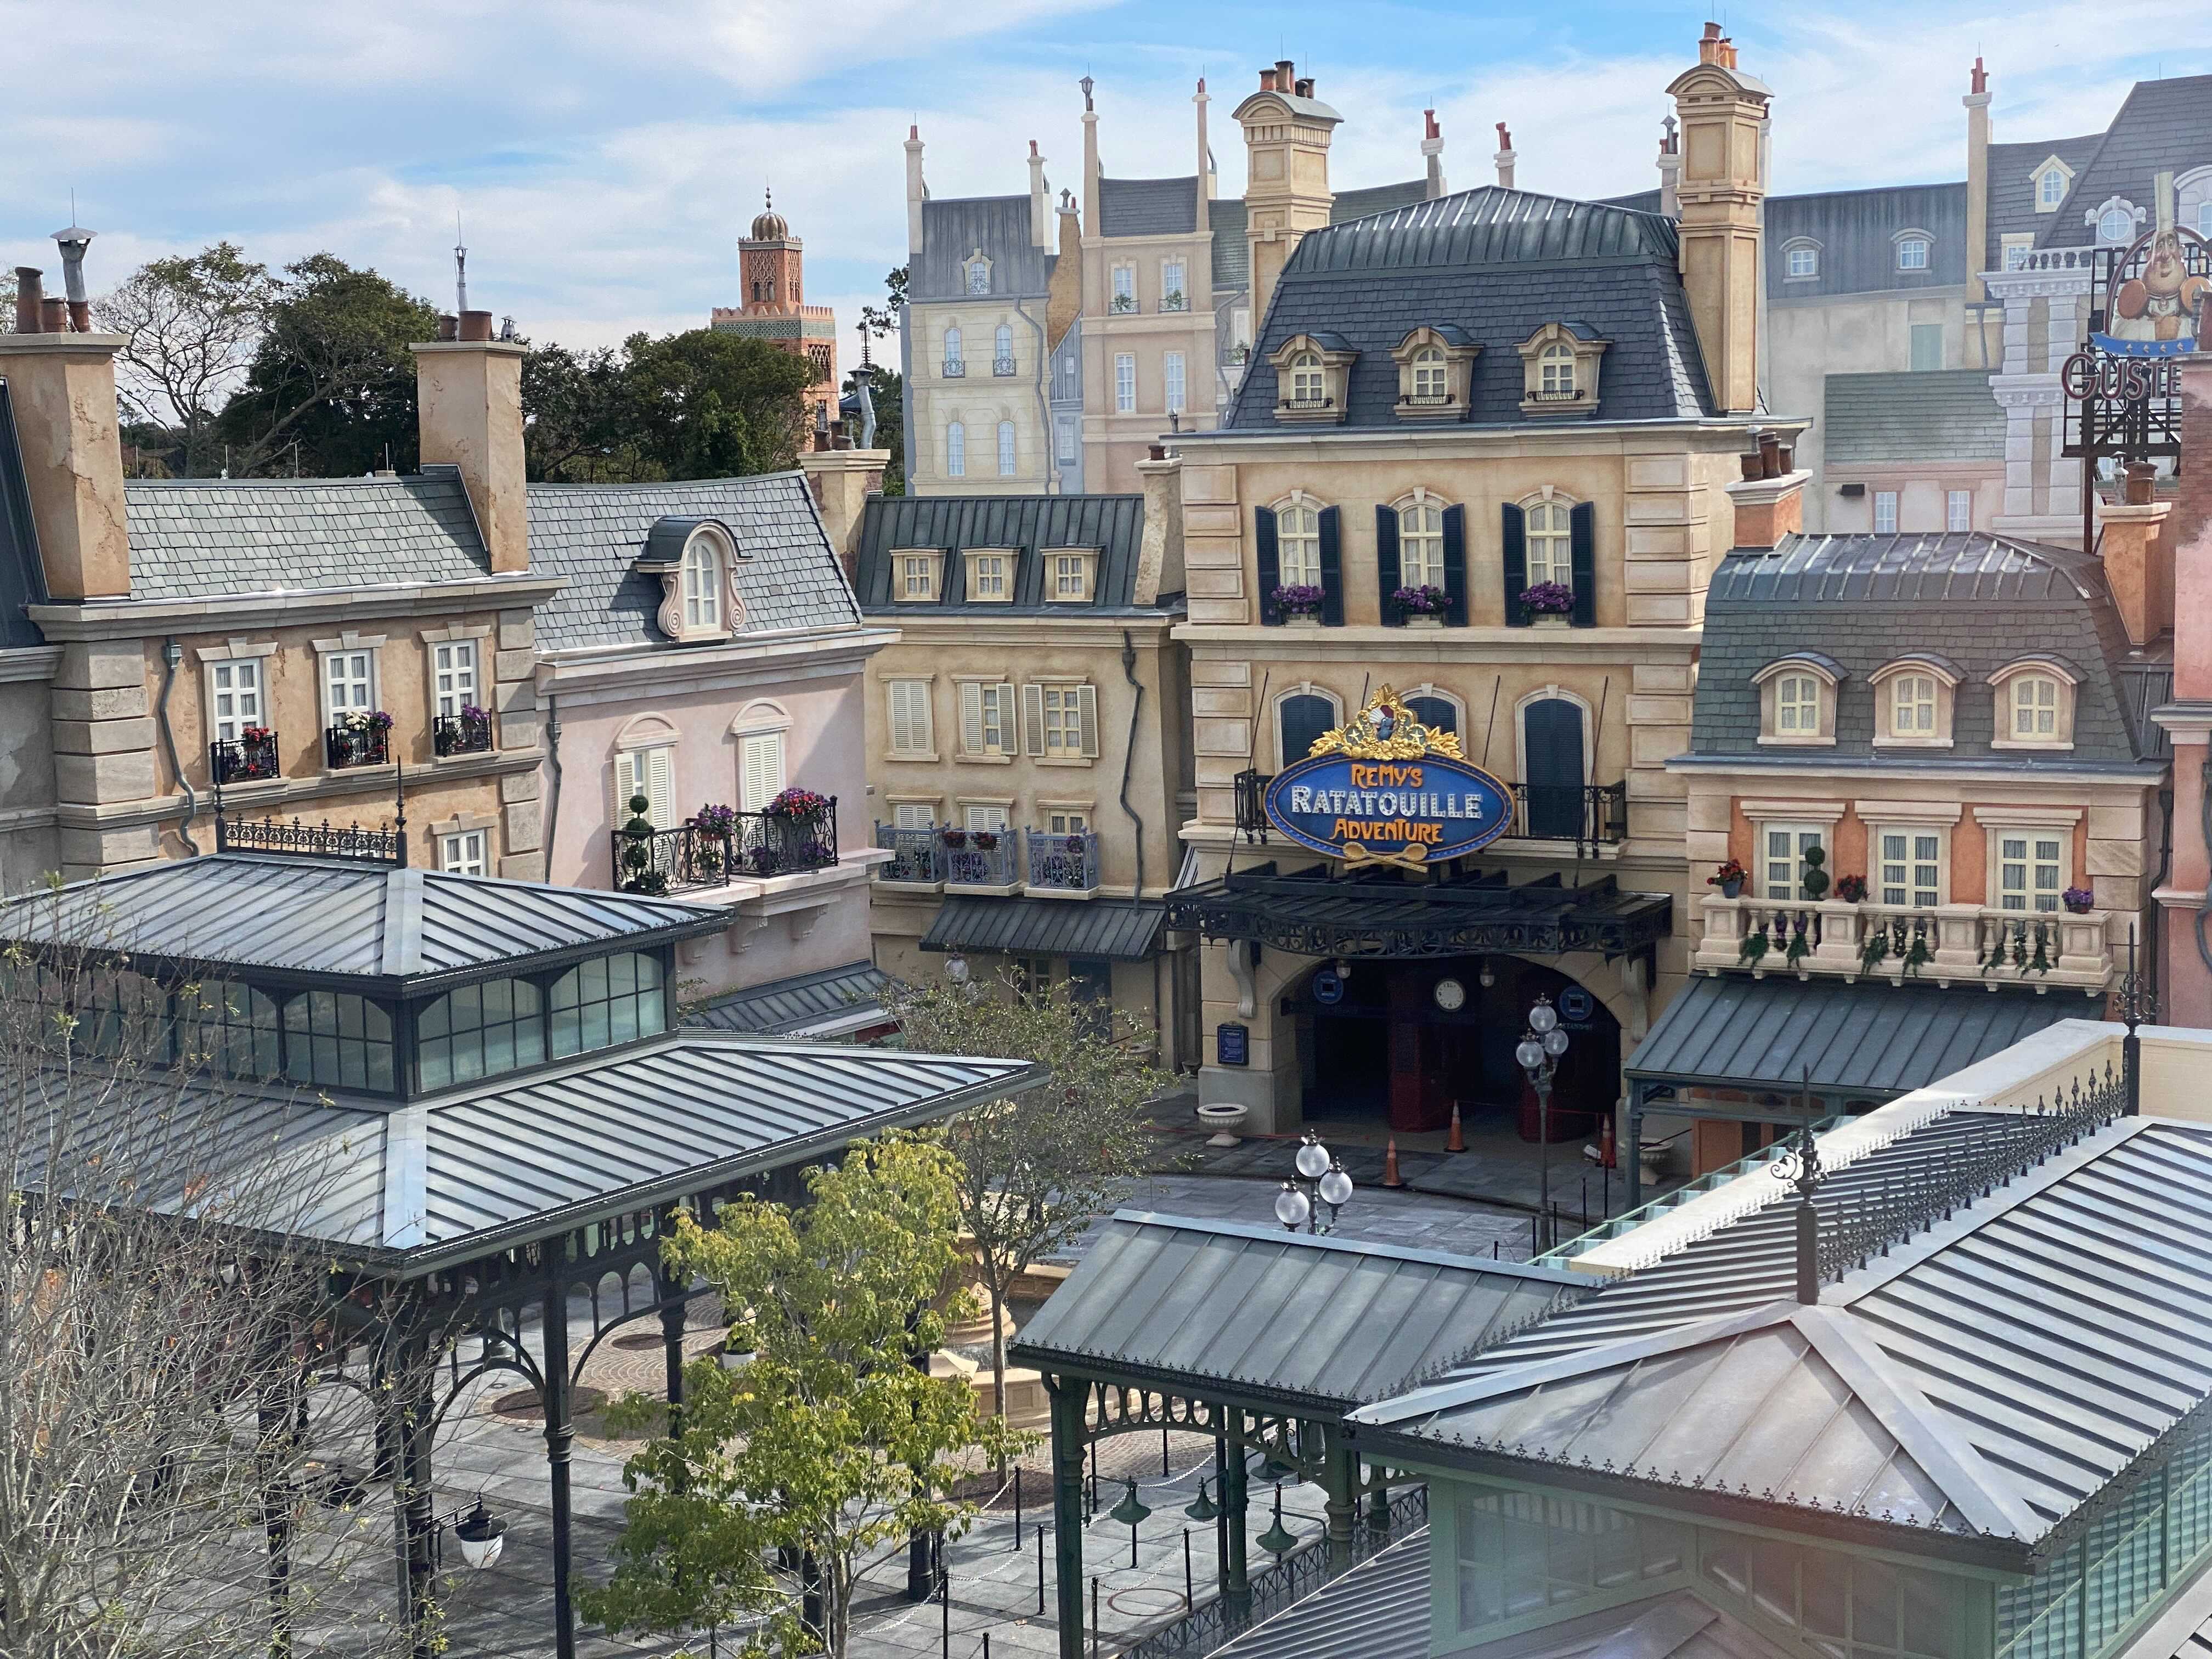 France-Pavilion-Expansion-Remys-Ratatouille-Adventure-construction-update-11-6690191.jpg